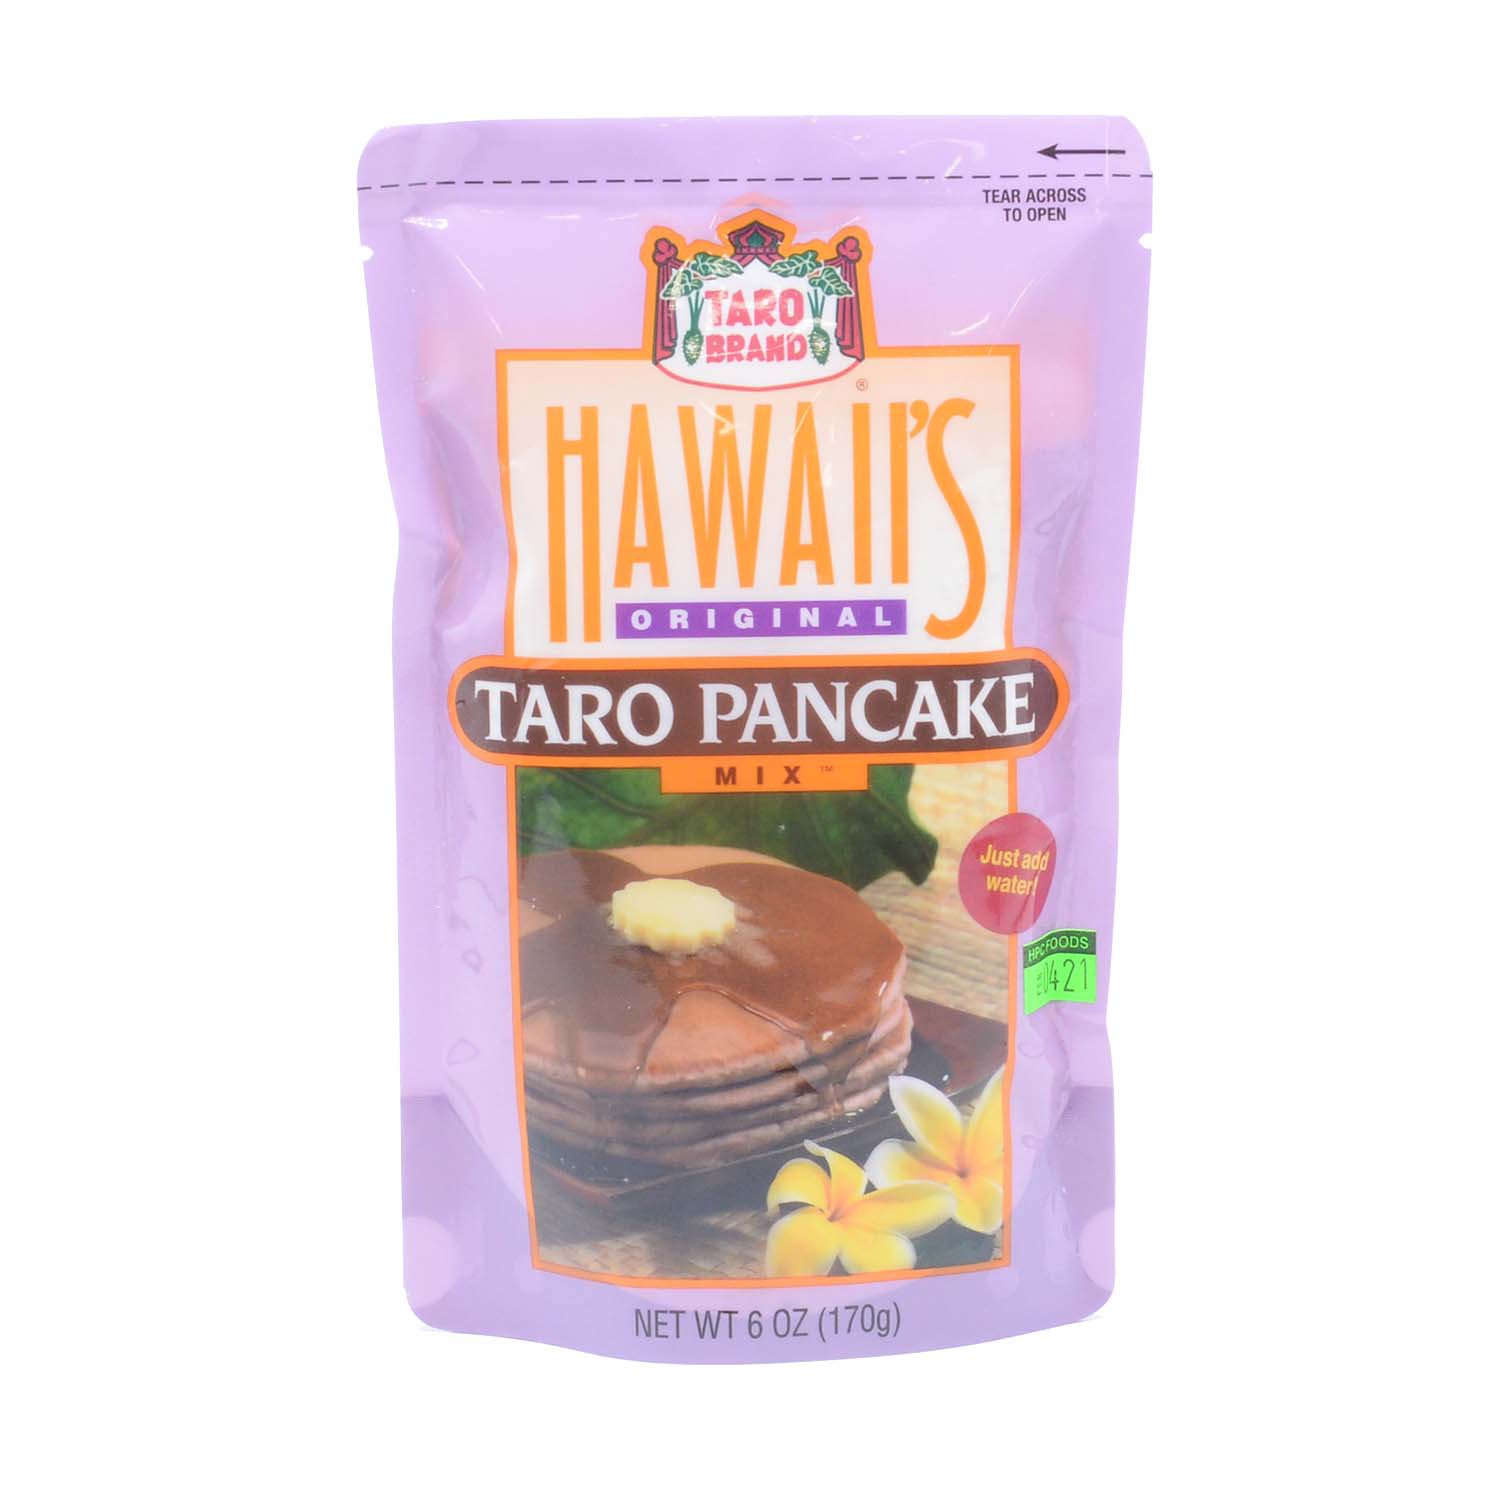 Hawaii's Taro Pancake Mix, Original